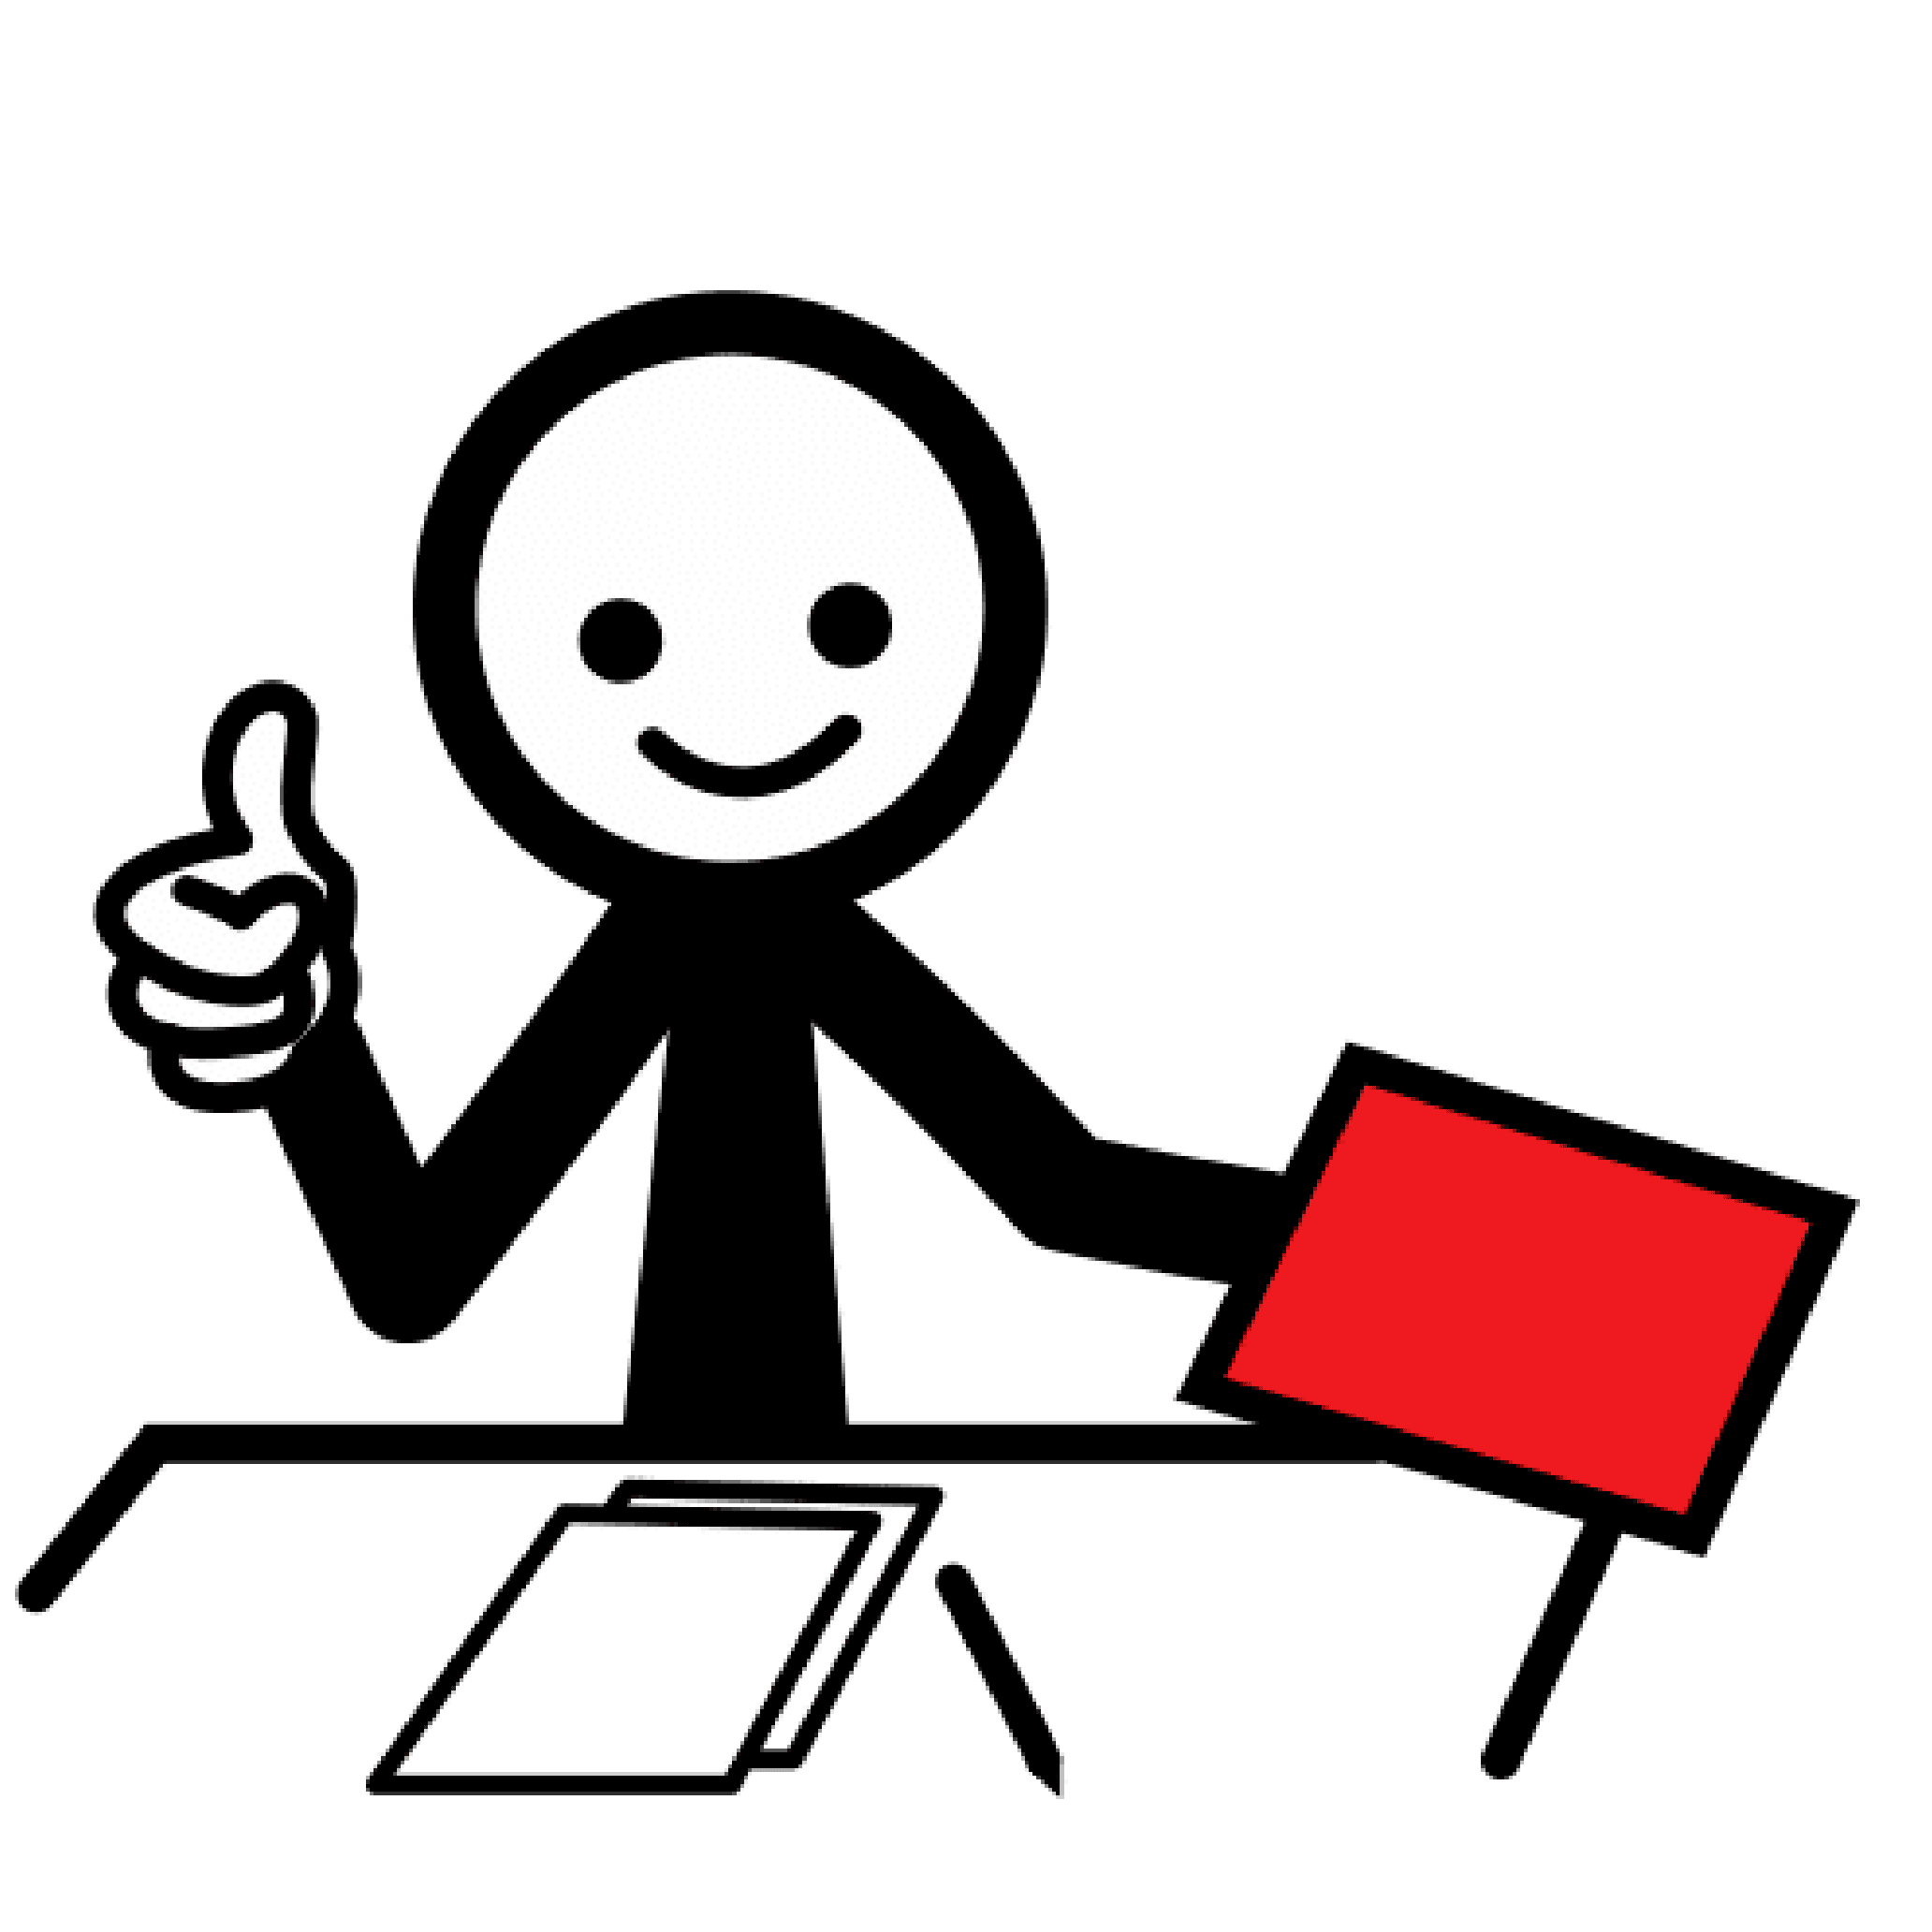 Persona de frente sentada tras un escritorio en el que hay 2 hojas en blanco y un bolígrafo. Con su mano derecha alza el pulgar en señal de OK y en la izquierda sostiene un papel rojo.